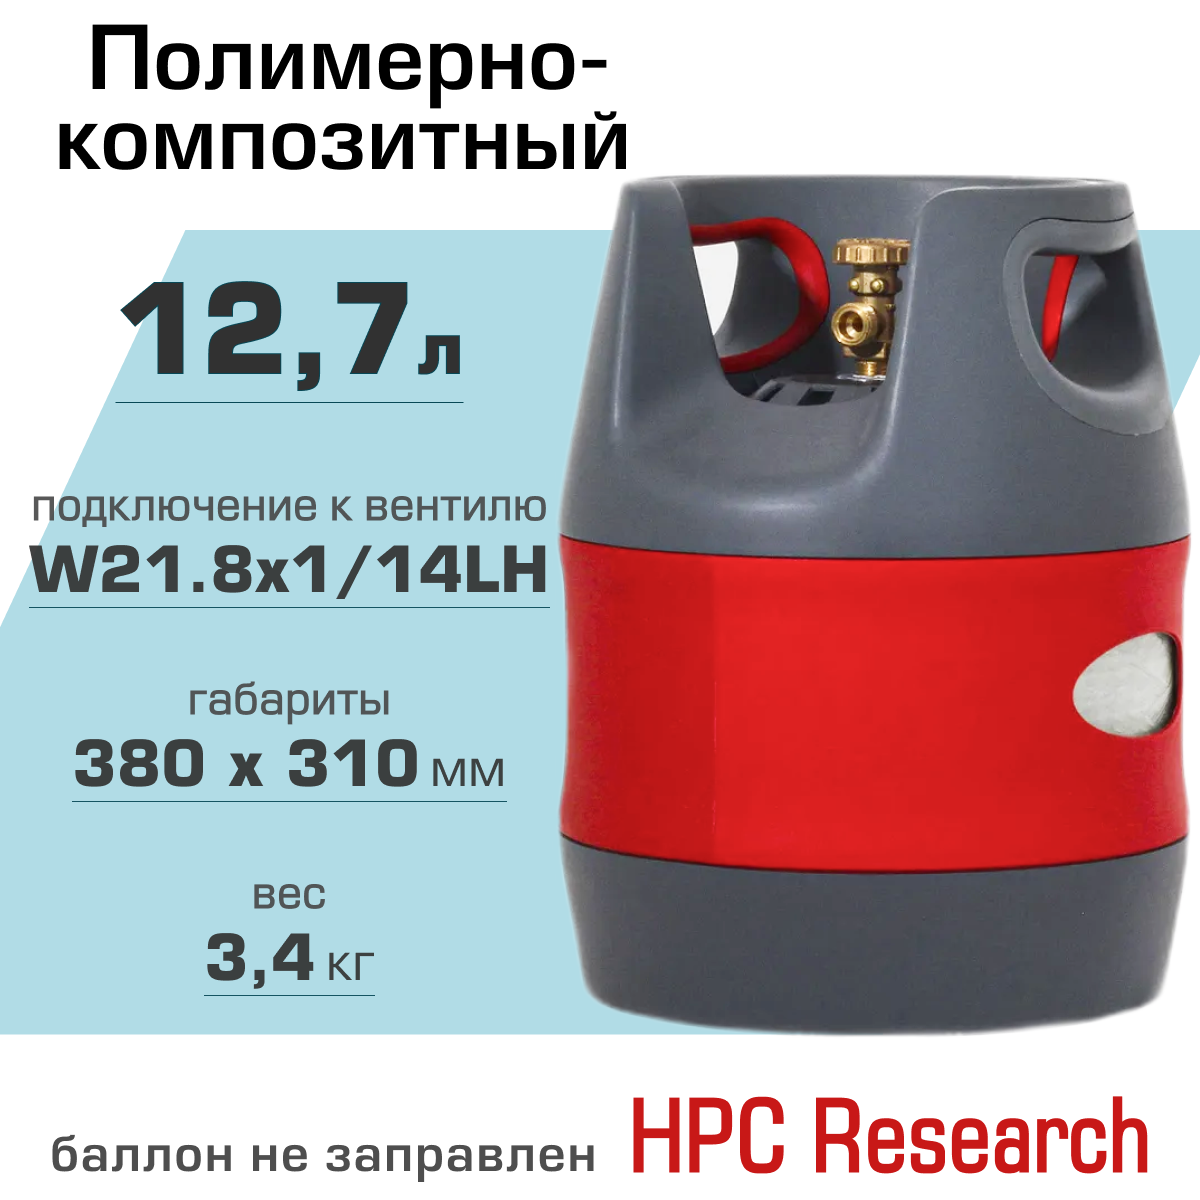 Полимерно-композитный газовый баллон HPC Research 12.7 л.